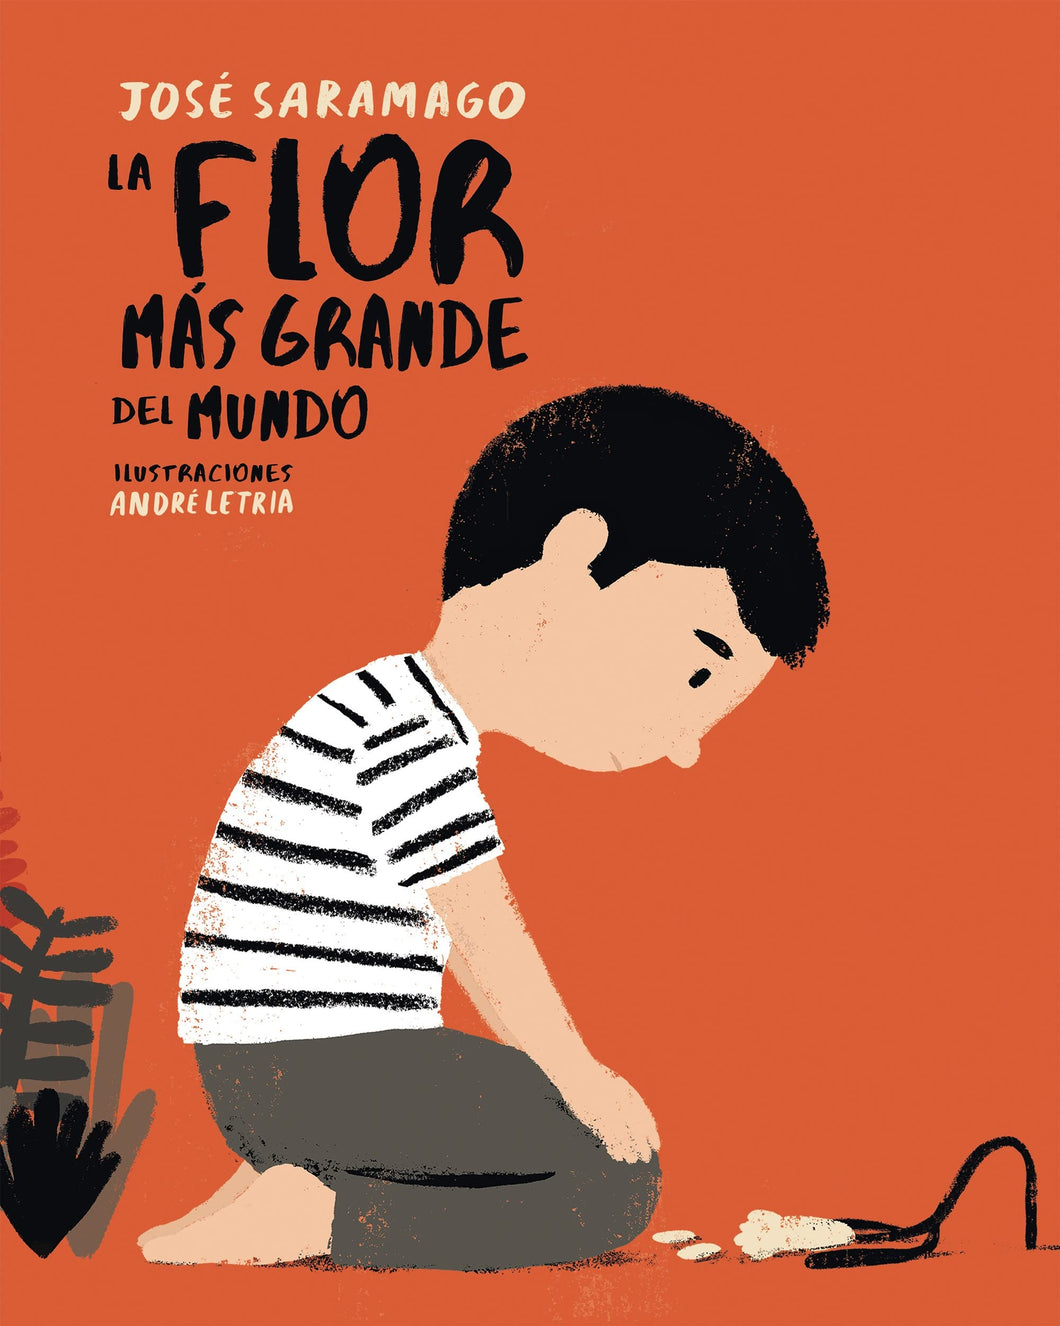 LA FLOR MÁS GRANDE DEL MUNDO - José Saramago Ilustraciones de André Letria